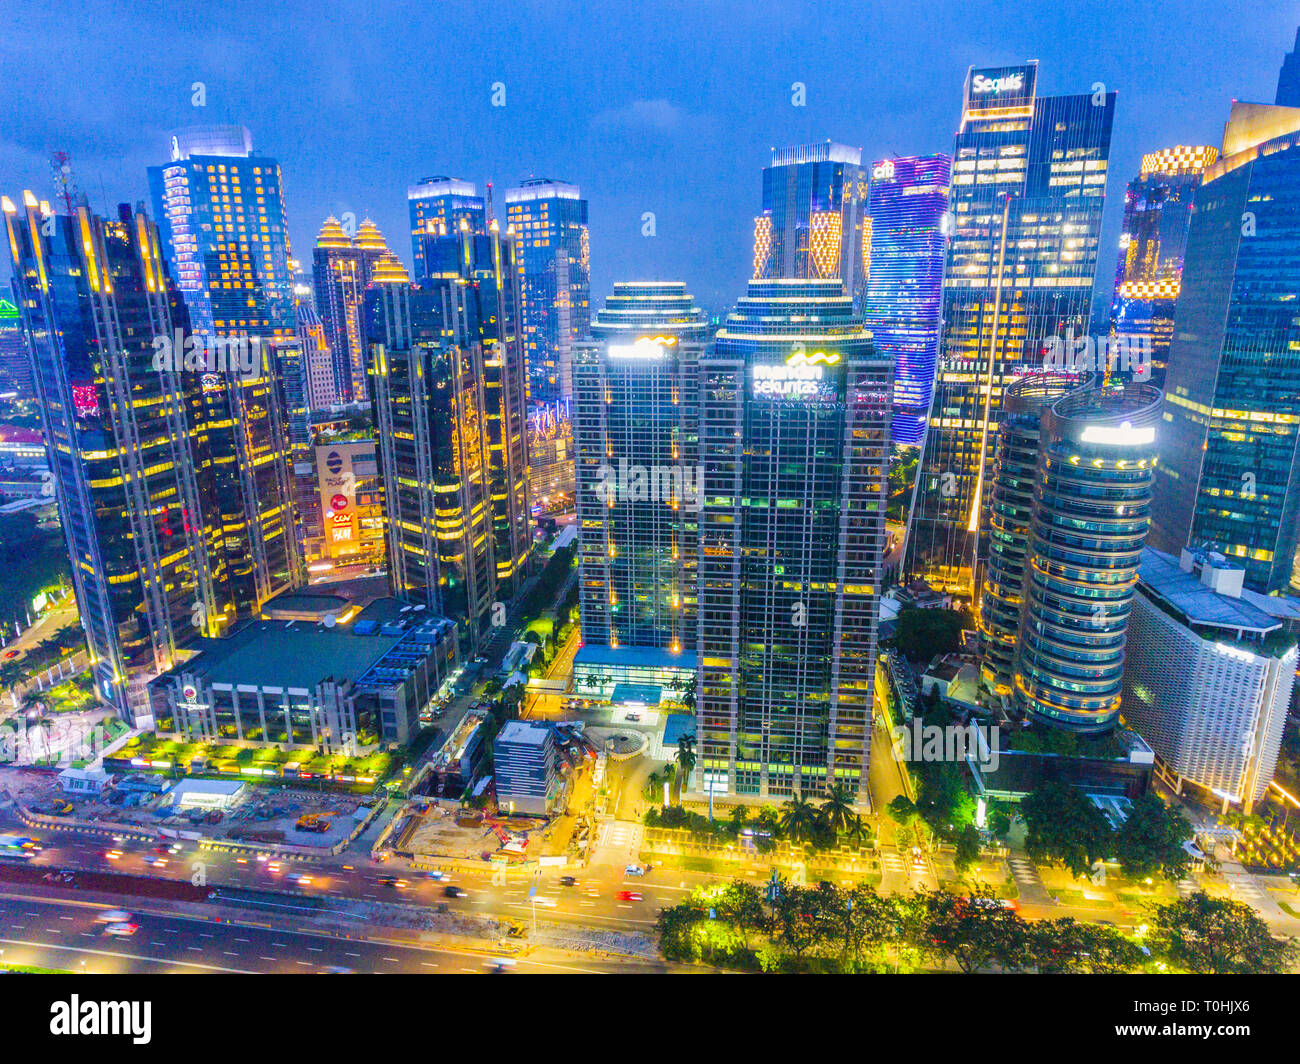 Von Jakarta Finanzviertel von SCBD (Sudirman Central Business District), die Börse von Jakarta gehören Stockfoto